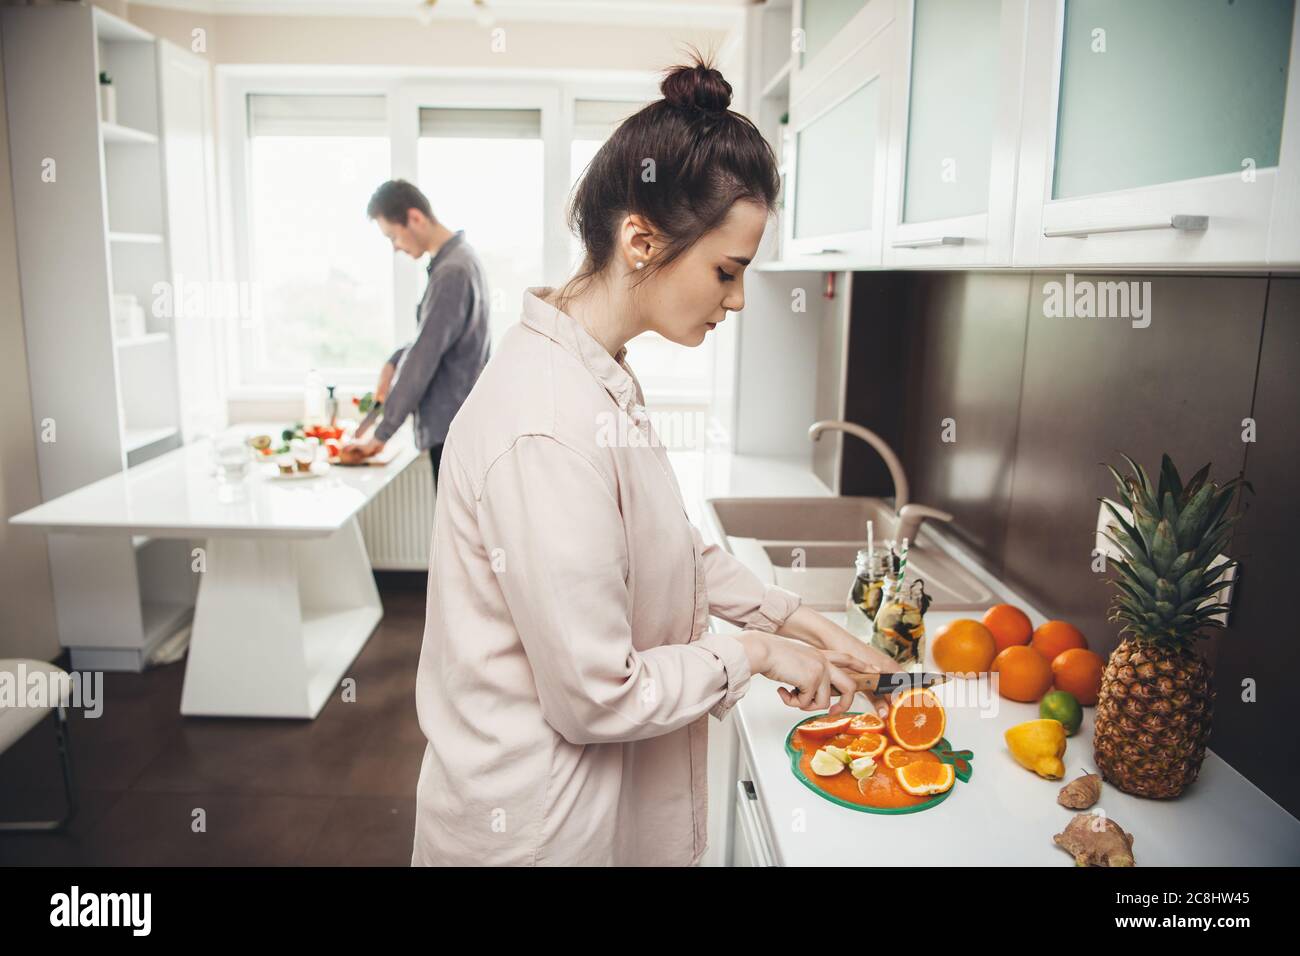 Un jeune couple de caucasiens prépare le petit déjeuner en coupant des fruits dans la cuisine Banque D'Images